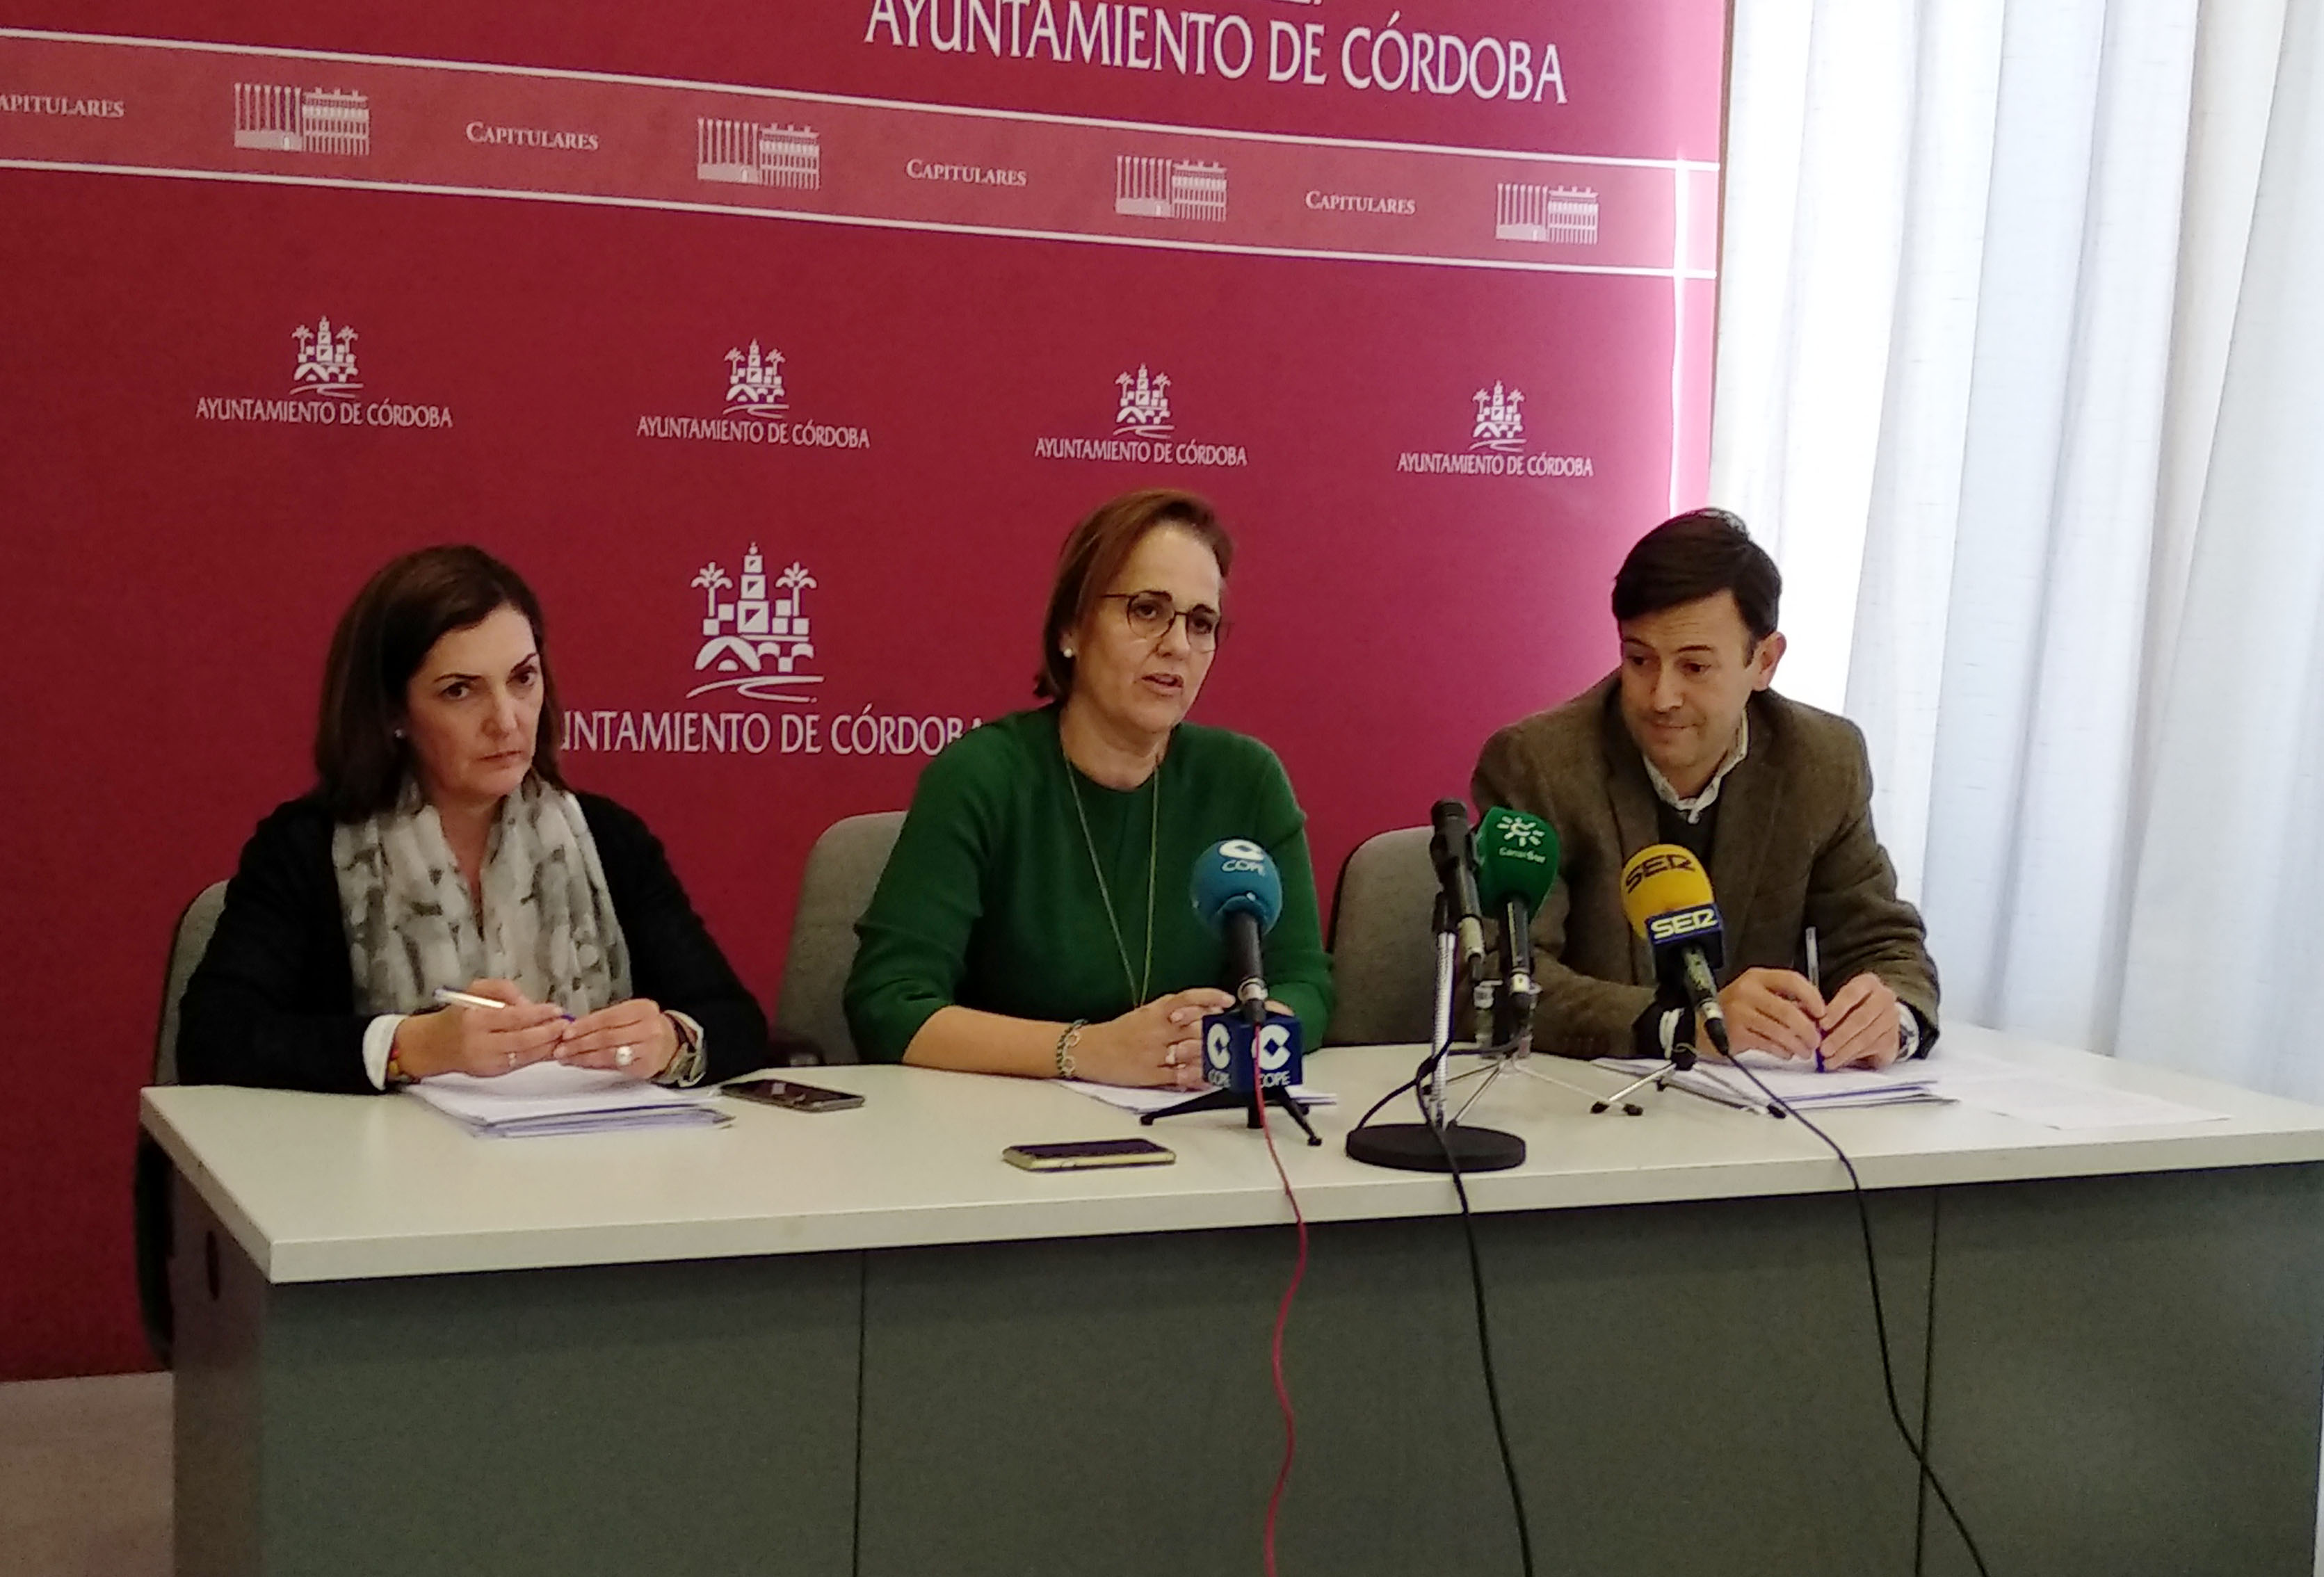 El Imdeec destina cerca de 1,5 millones de euros a incentivos y ayudas para empresas y entidades de Córdoba en 2019